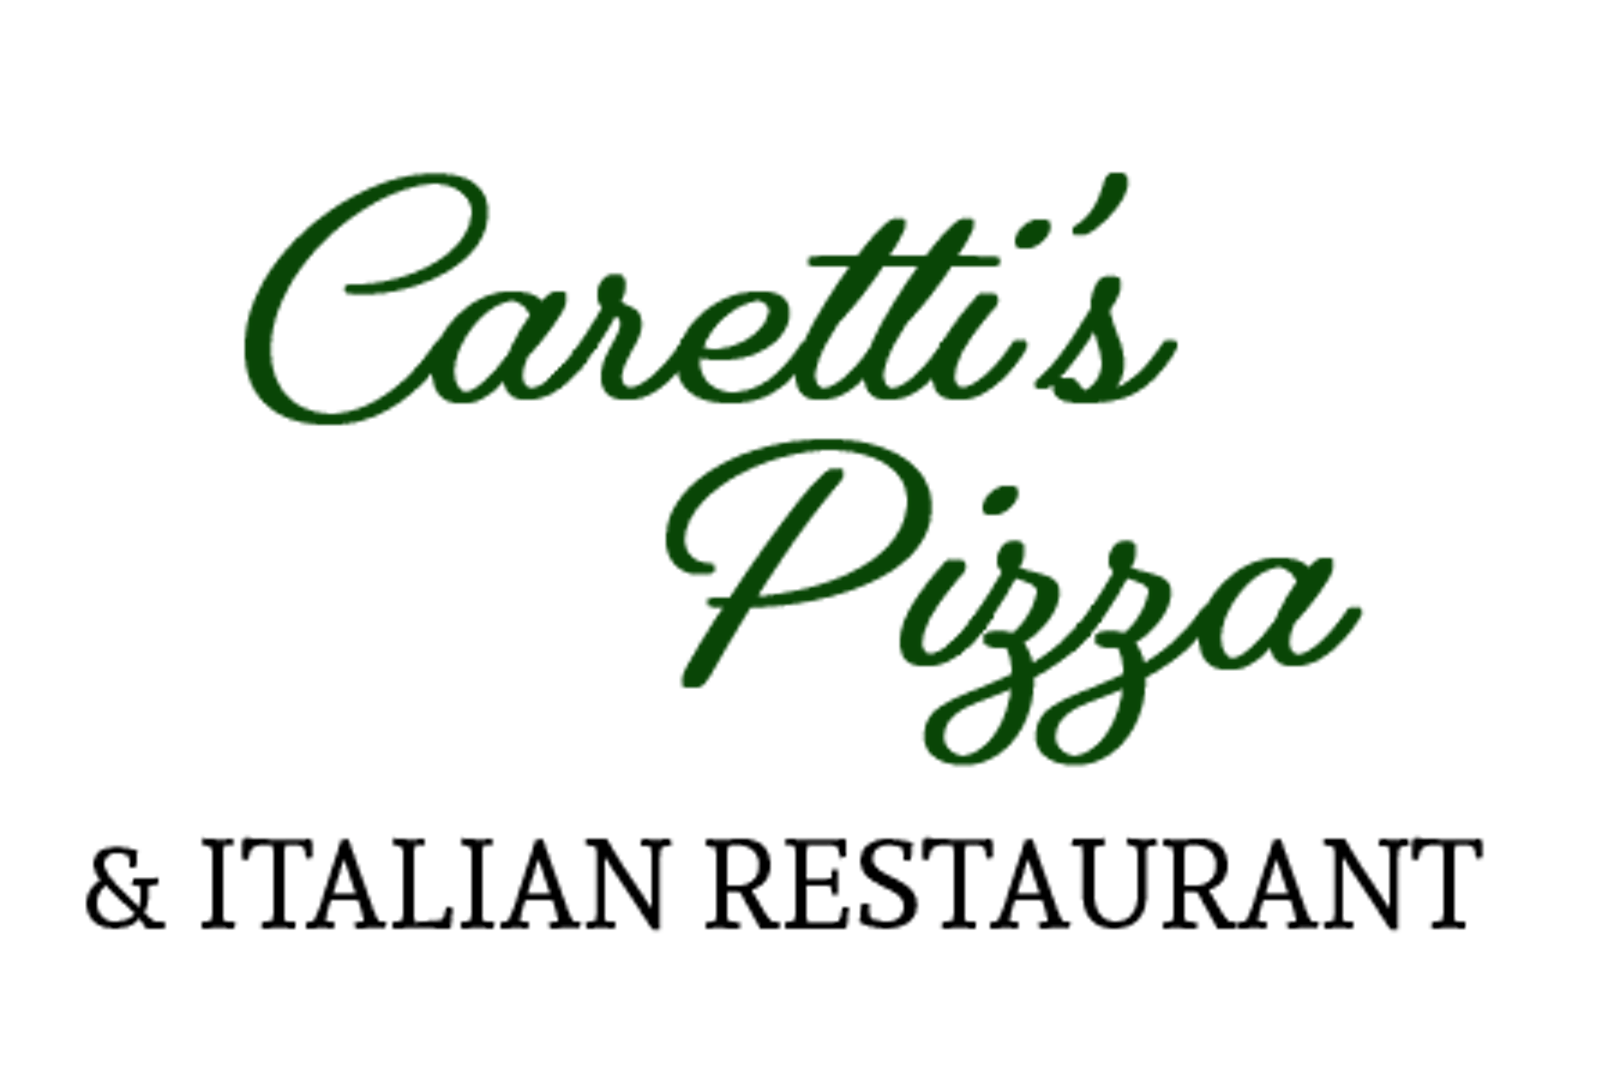 Caretti S Pizza Italian Restaurant Chambersburg Pa 17202